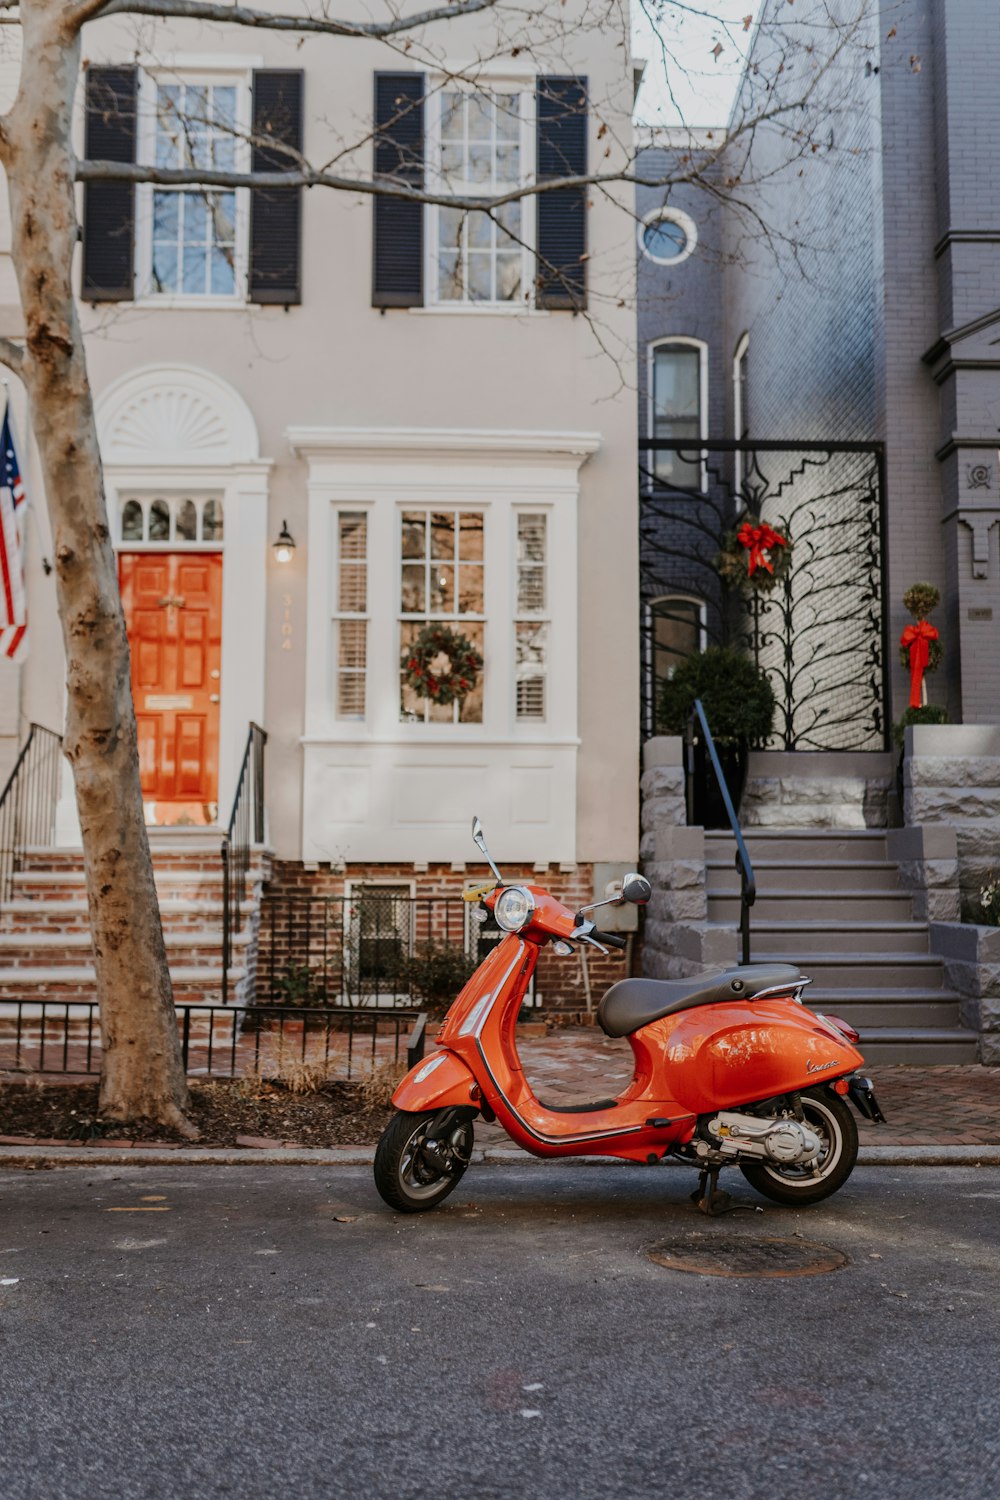 昼間、白いコンクリートの建物の脇に停車した赤と黒のモータースクーター